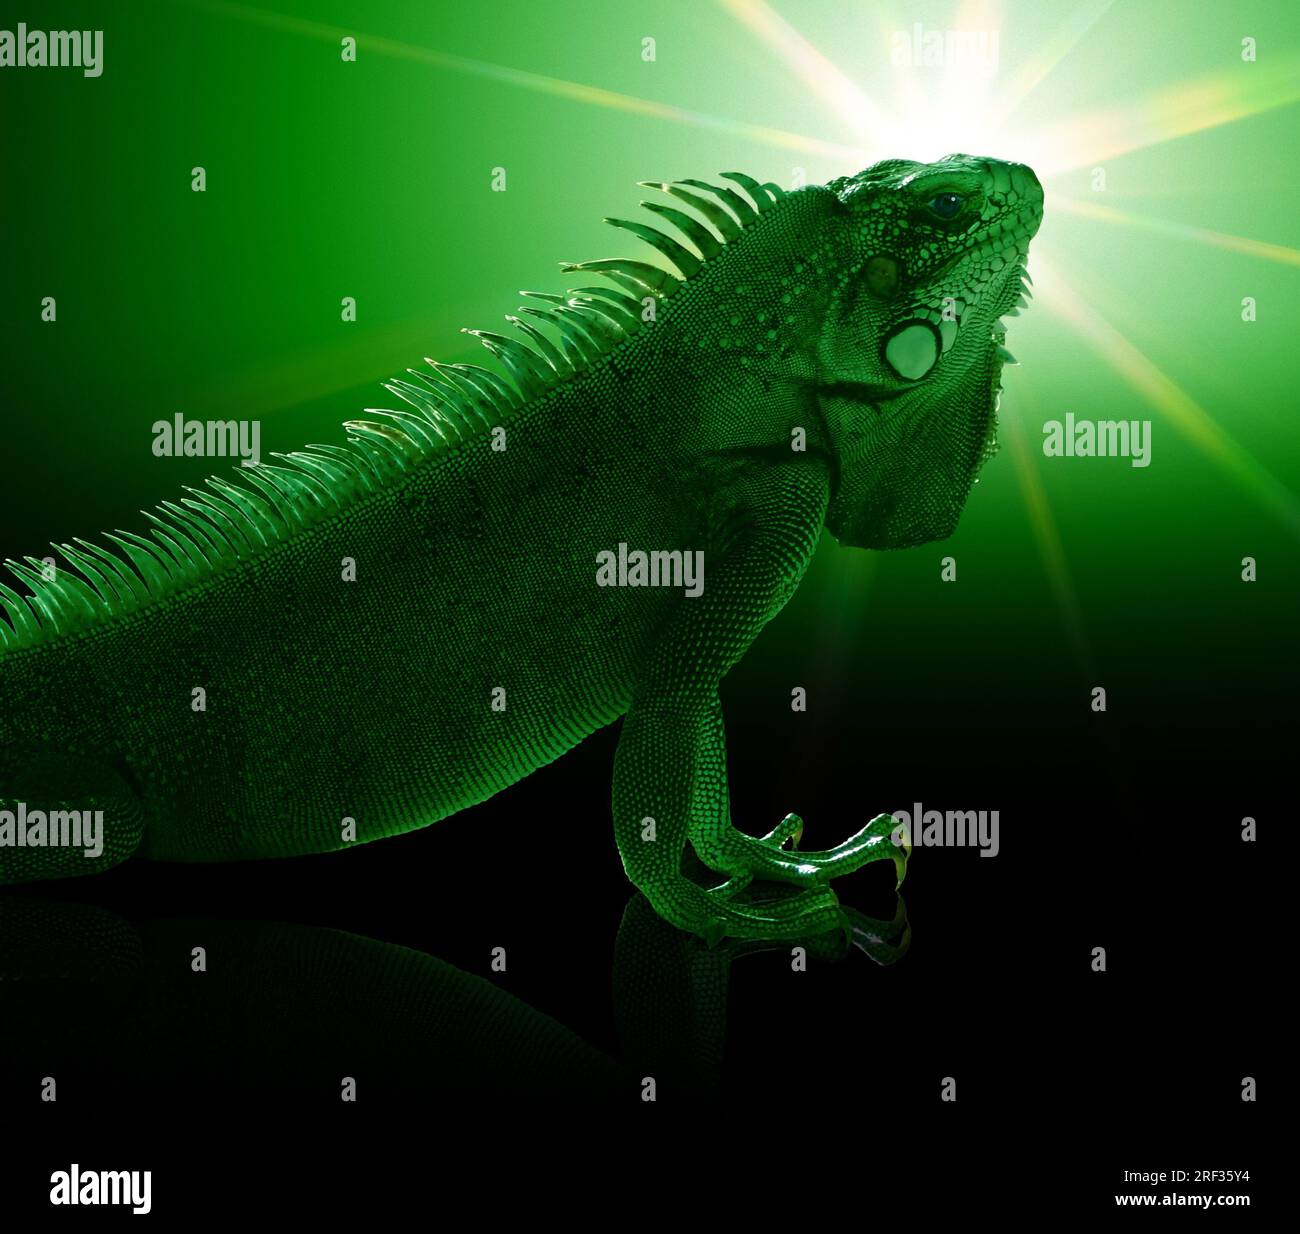 Ritratto di un verde iguana verde tonica mistica atmosfera artificiale Foto Stock